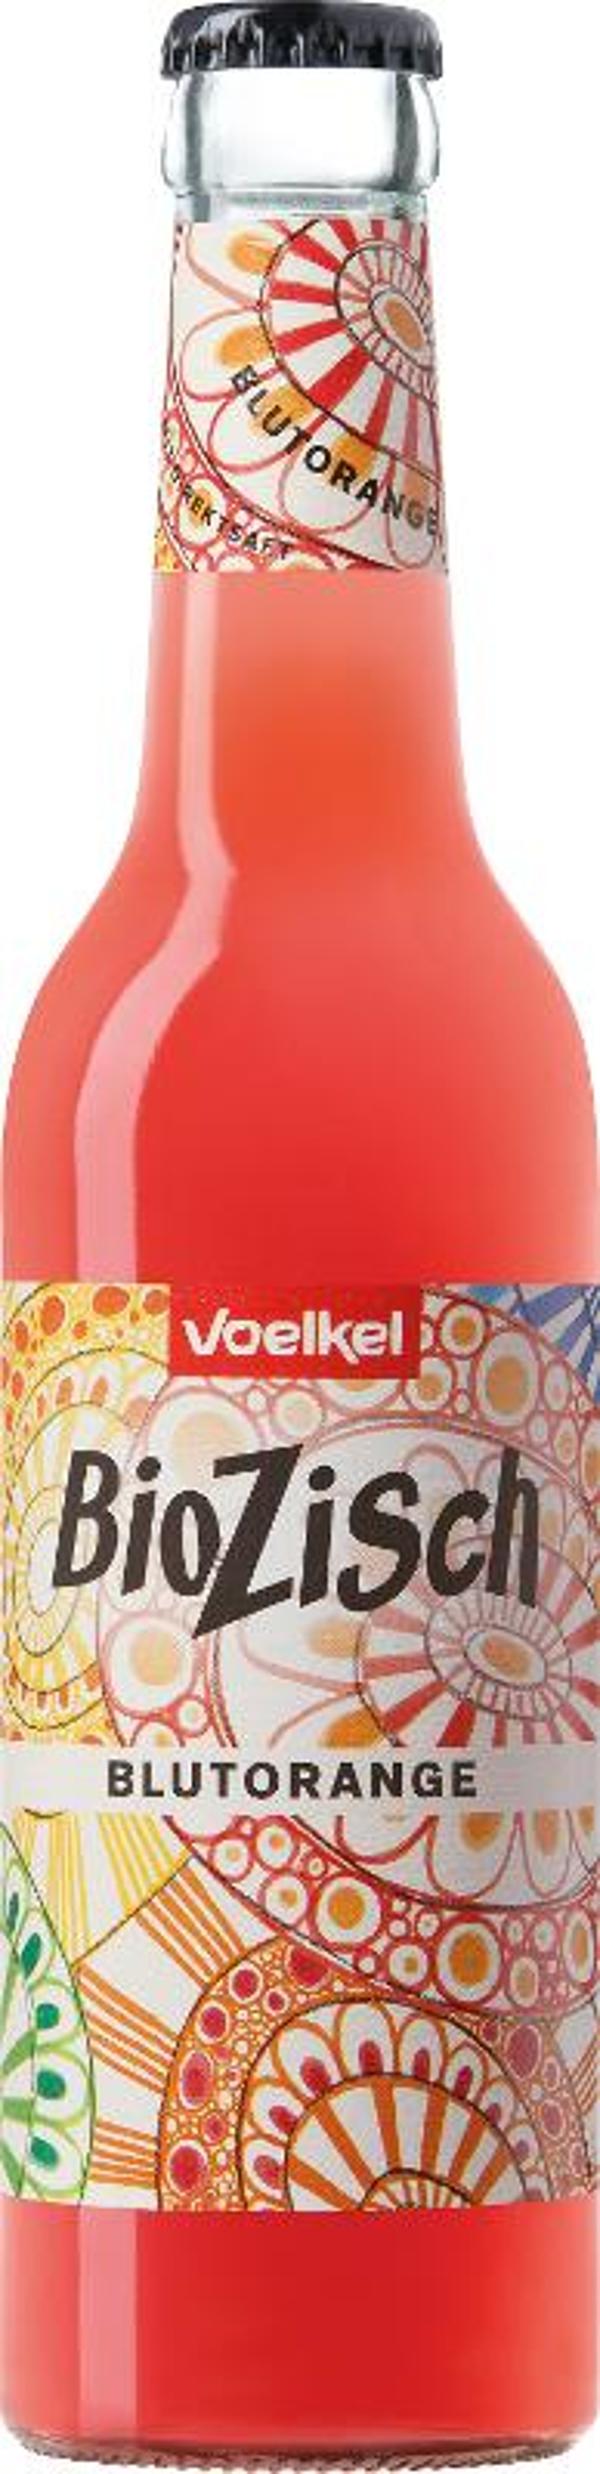 Produktfoto zu BioZisch Blutorange 0,33 l Voelkel